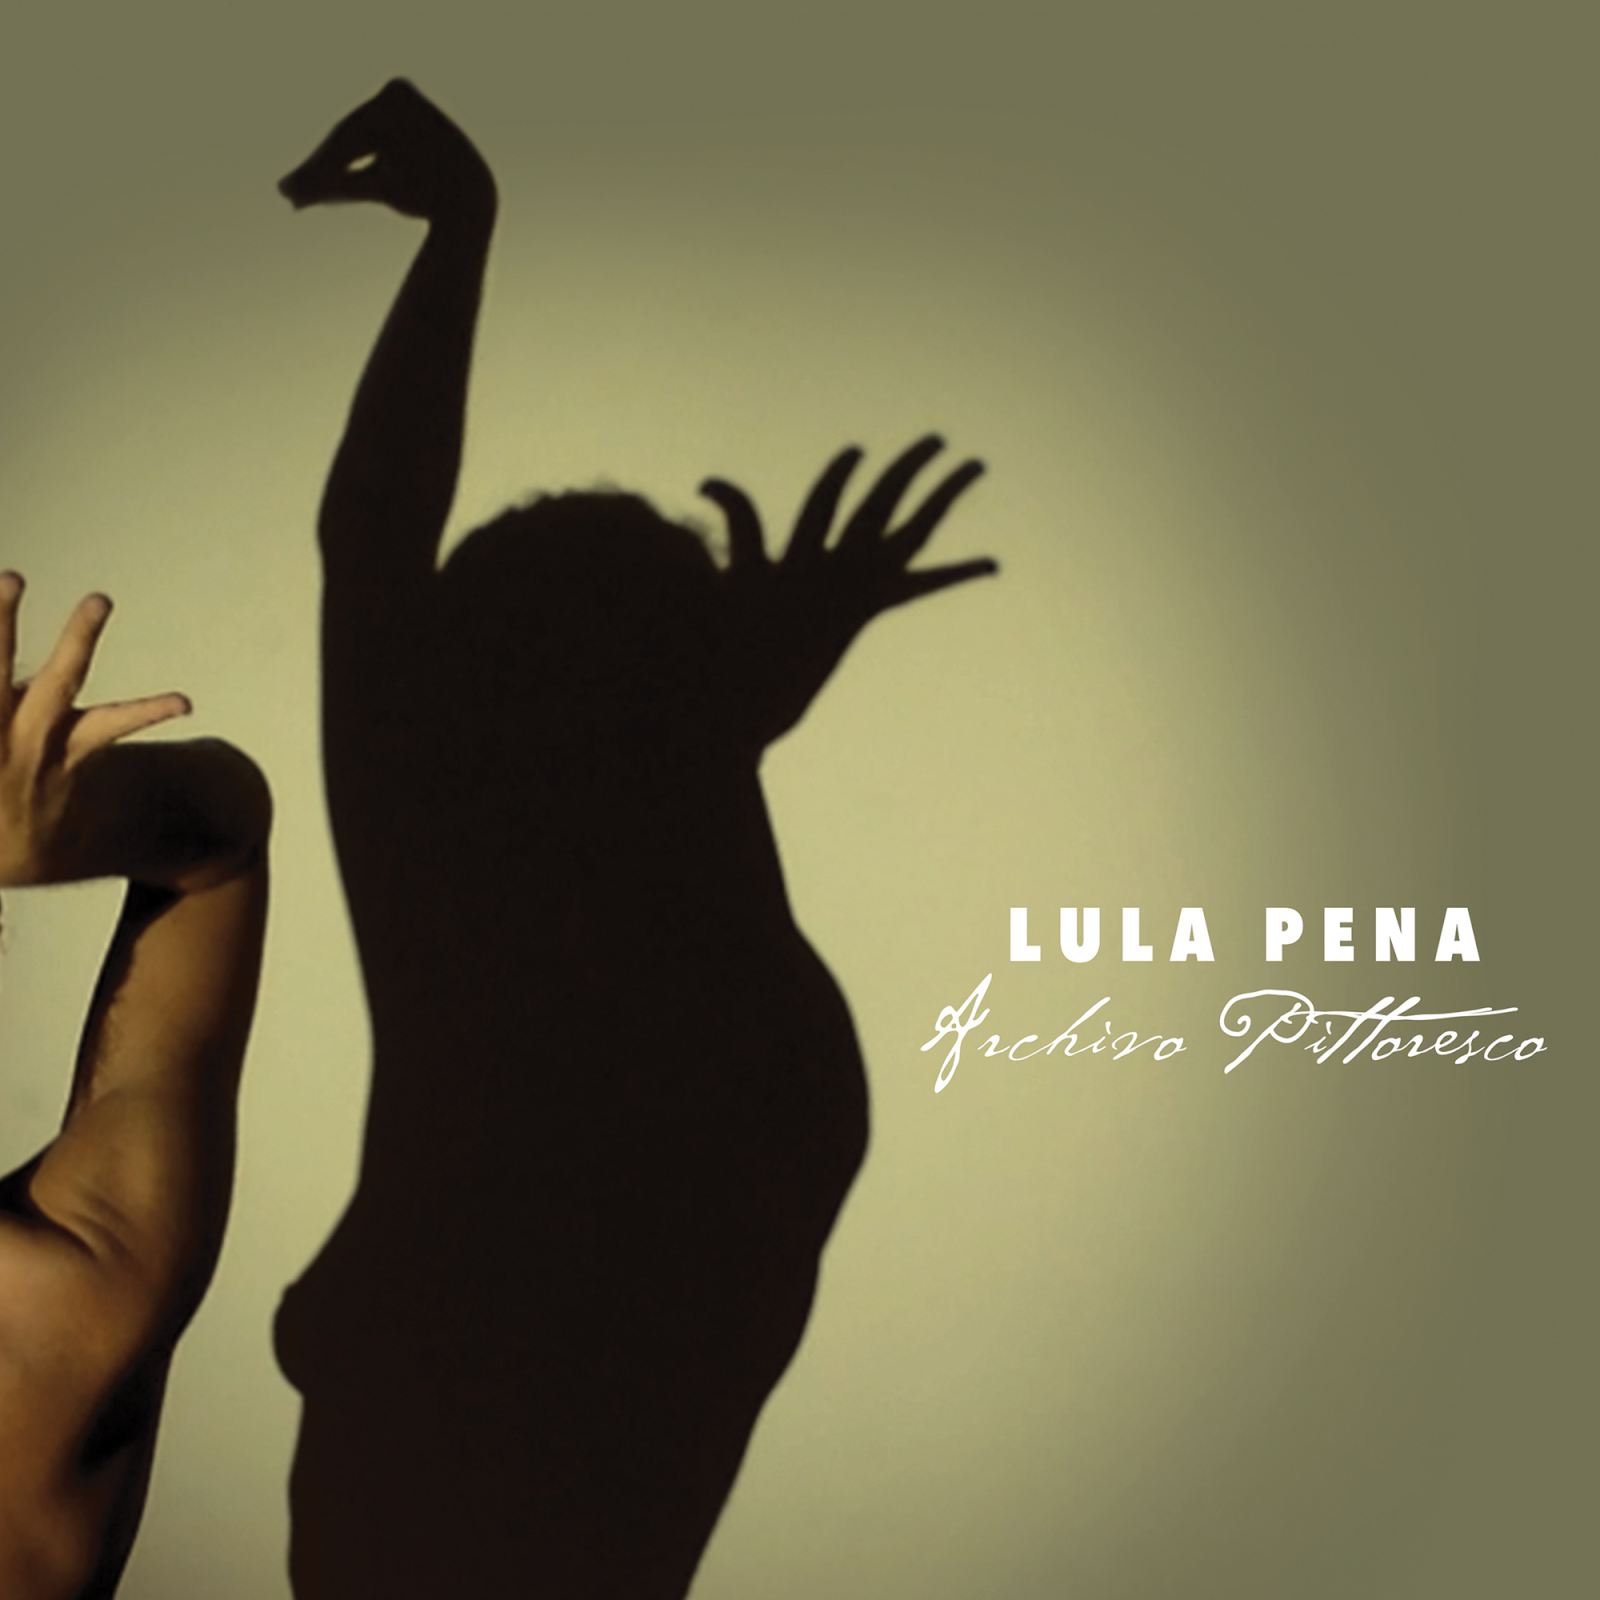 O bom regresso de Lula Pena